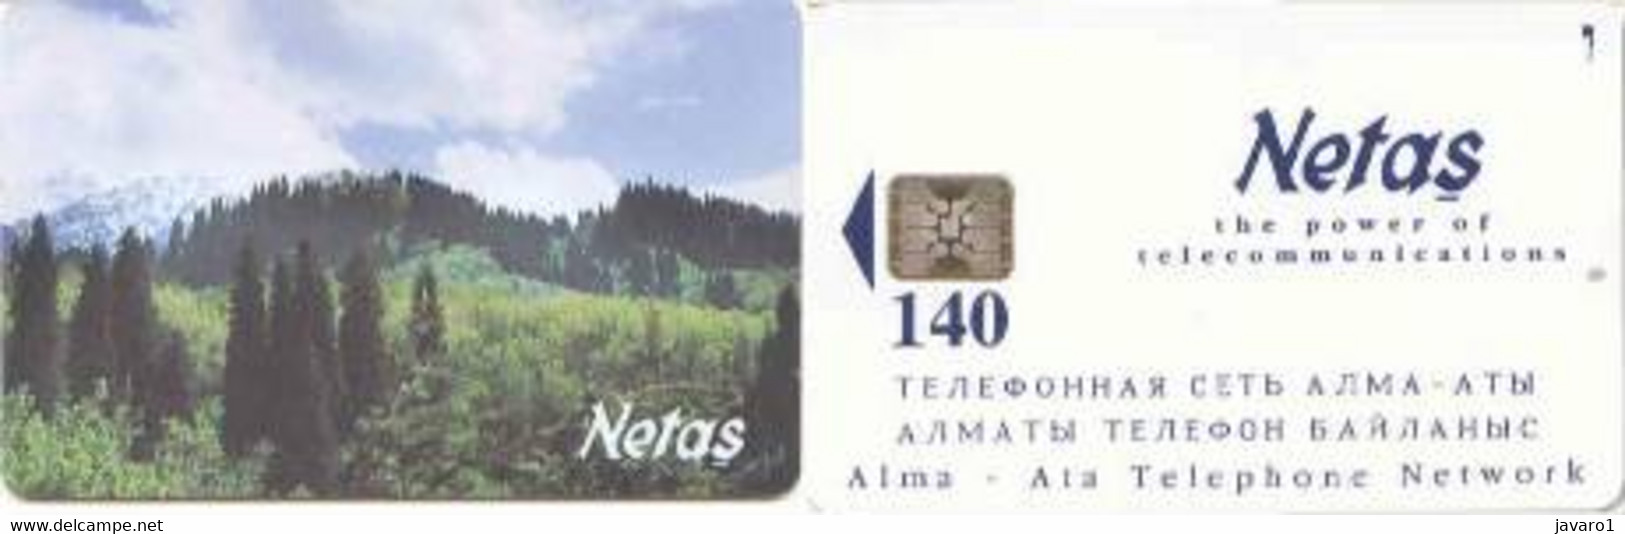 KAZACHSTAN : KAZ-CN1 140u NETAS ALMA-ATA Network MINT - Kasachstan